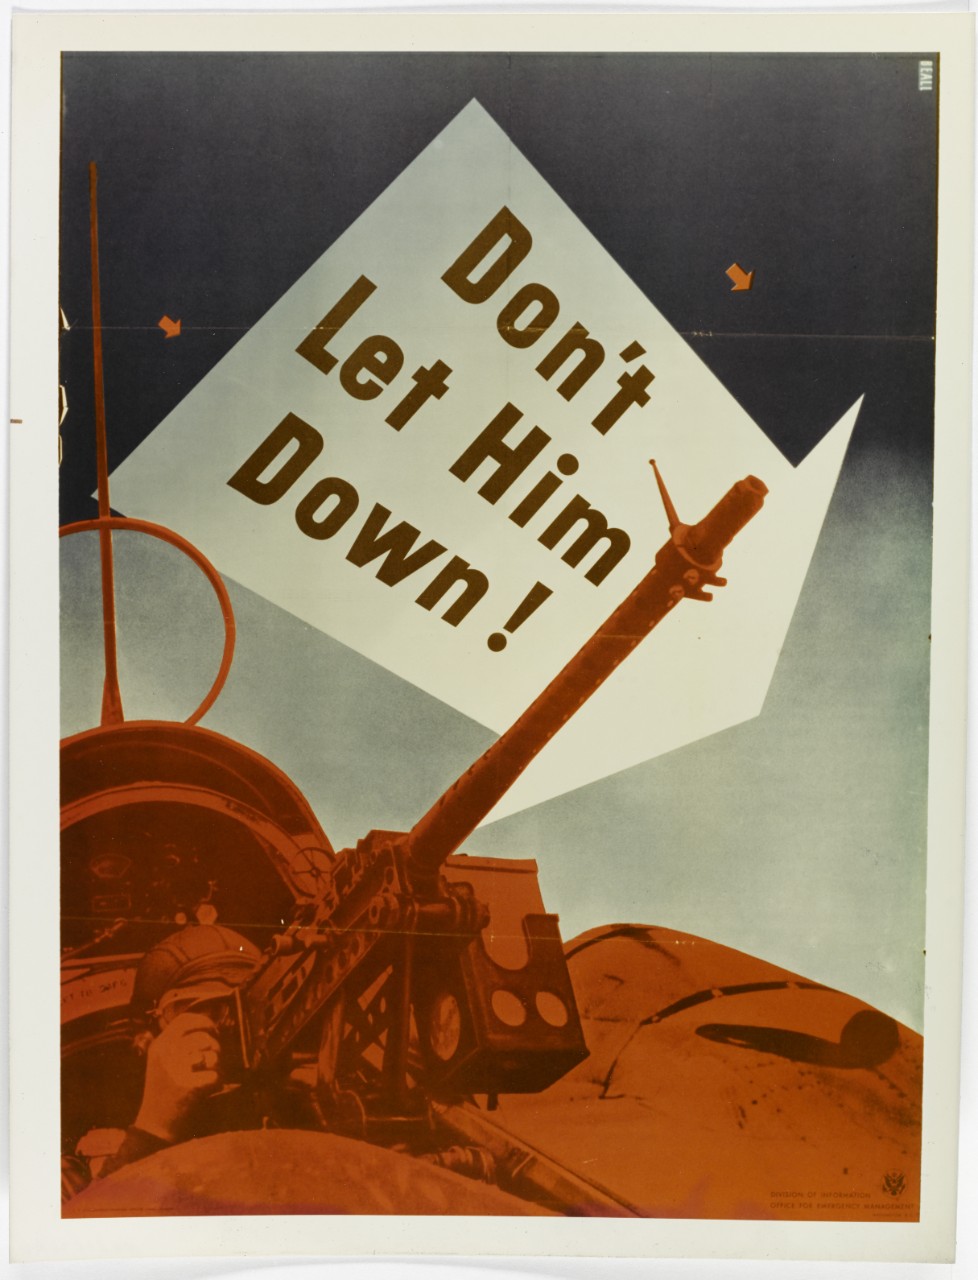 World War II poster